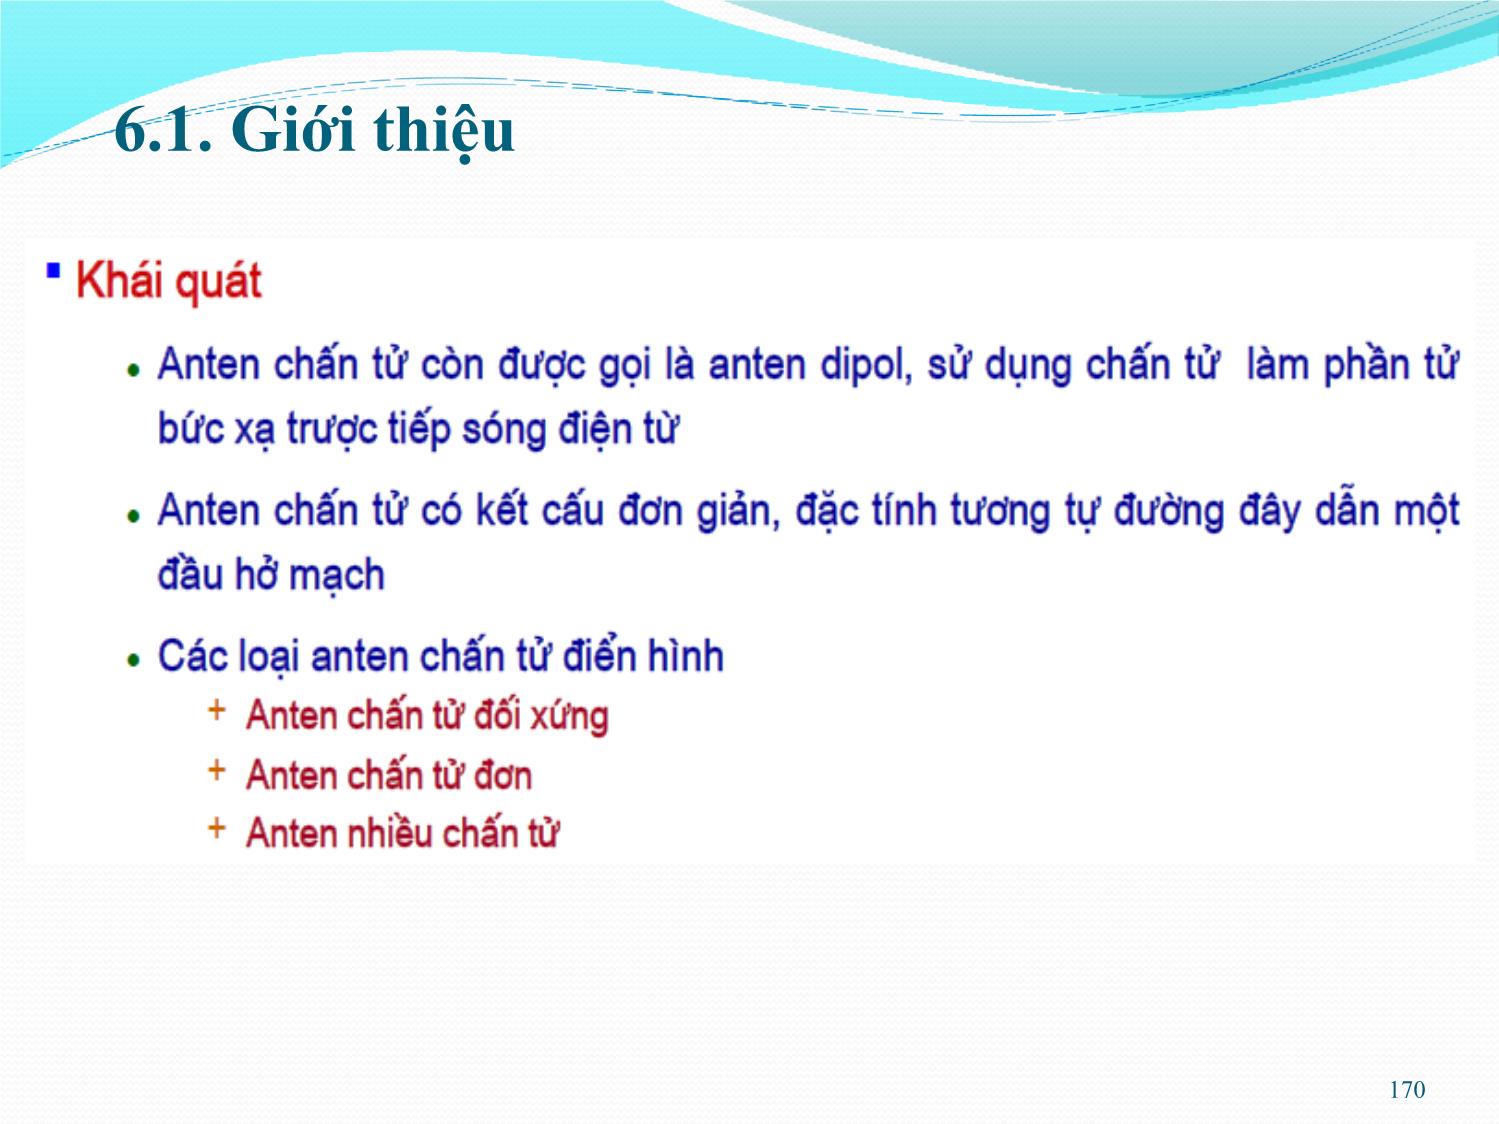 Bài giảng Kỹ thuật anten và truyền sóng - Chương 6: Anten chấn tử - Nguyễn Thị Linh Phương trang 2